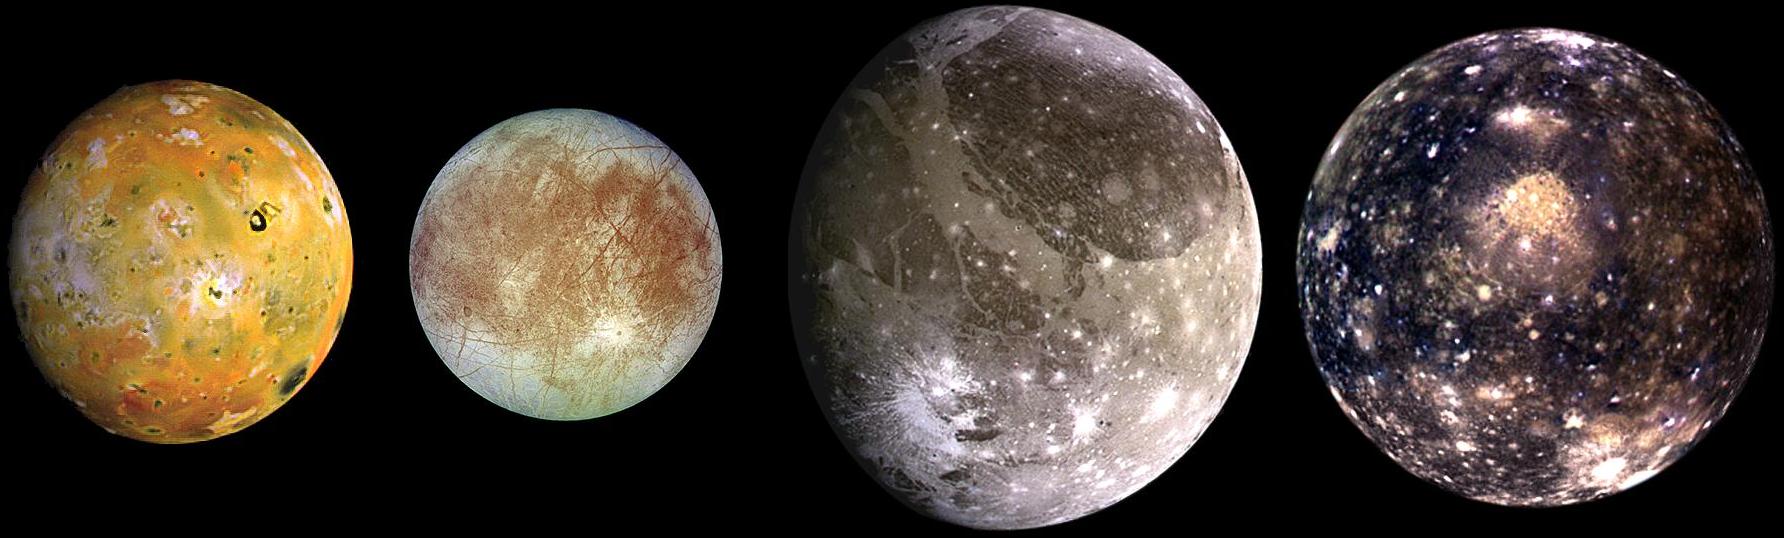 Les quatre lunes médicéennes de Jupiter photographiées par Galileo. De gauche à droite, en partant de Jupiter : Io, Europe, Callisto, Ganymède.  © Nasa